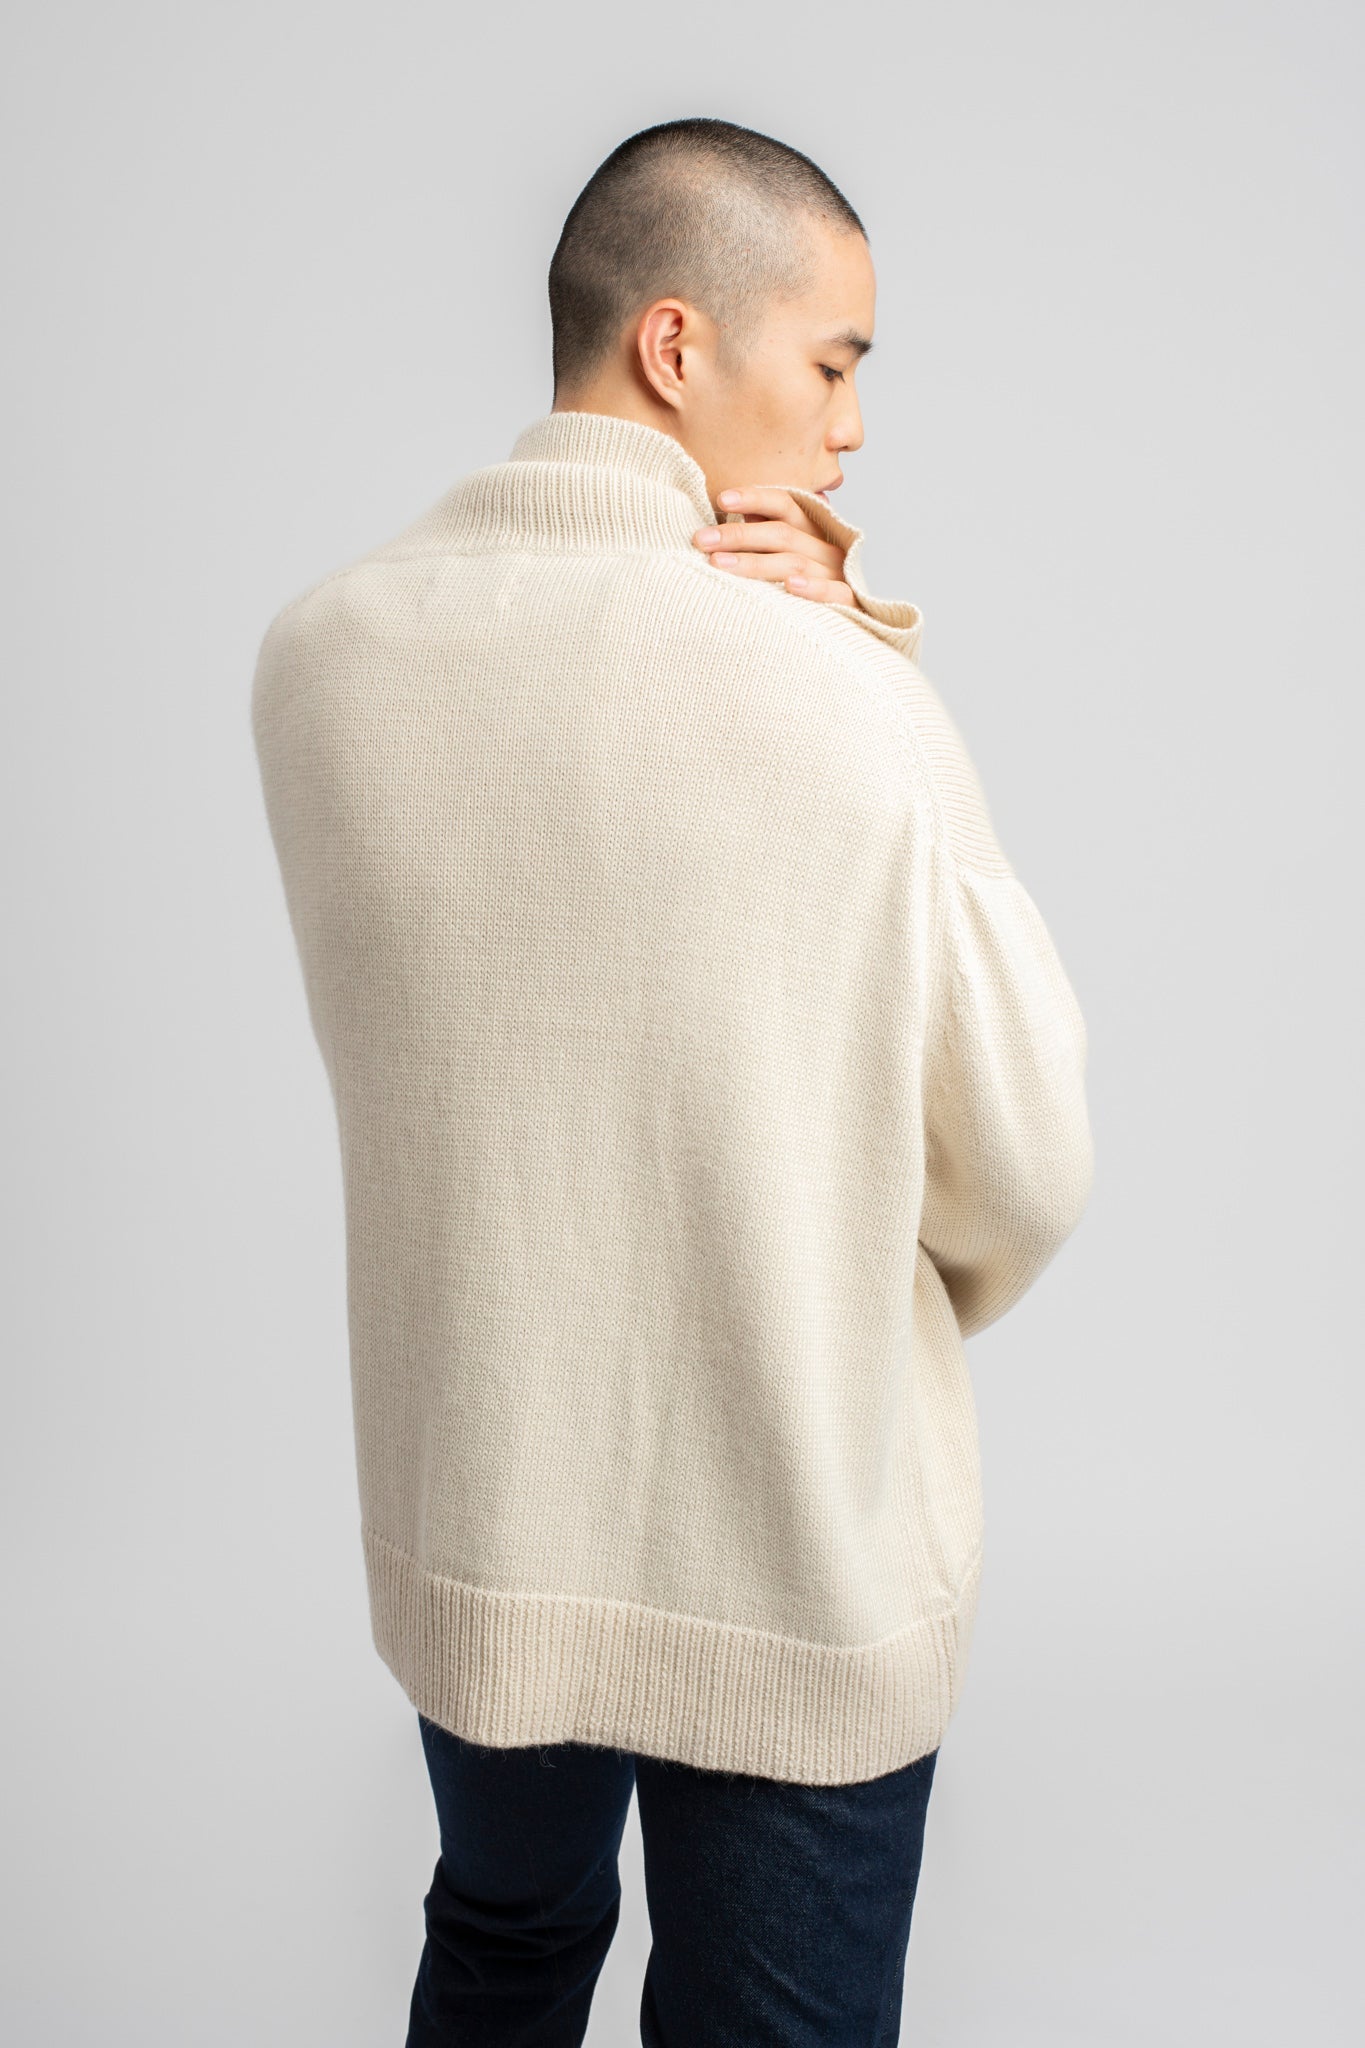 Model wearing turtleneck oversized sweater in white alpaca wool, back